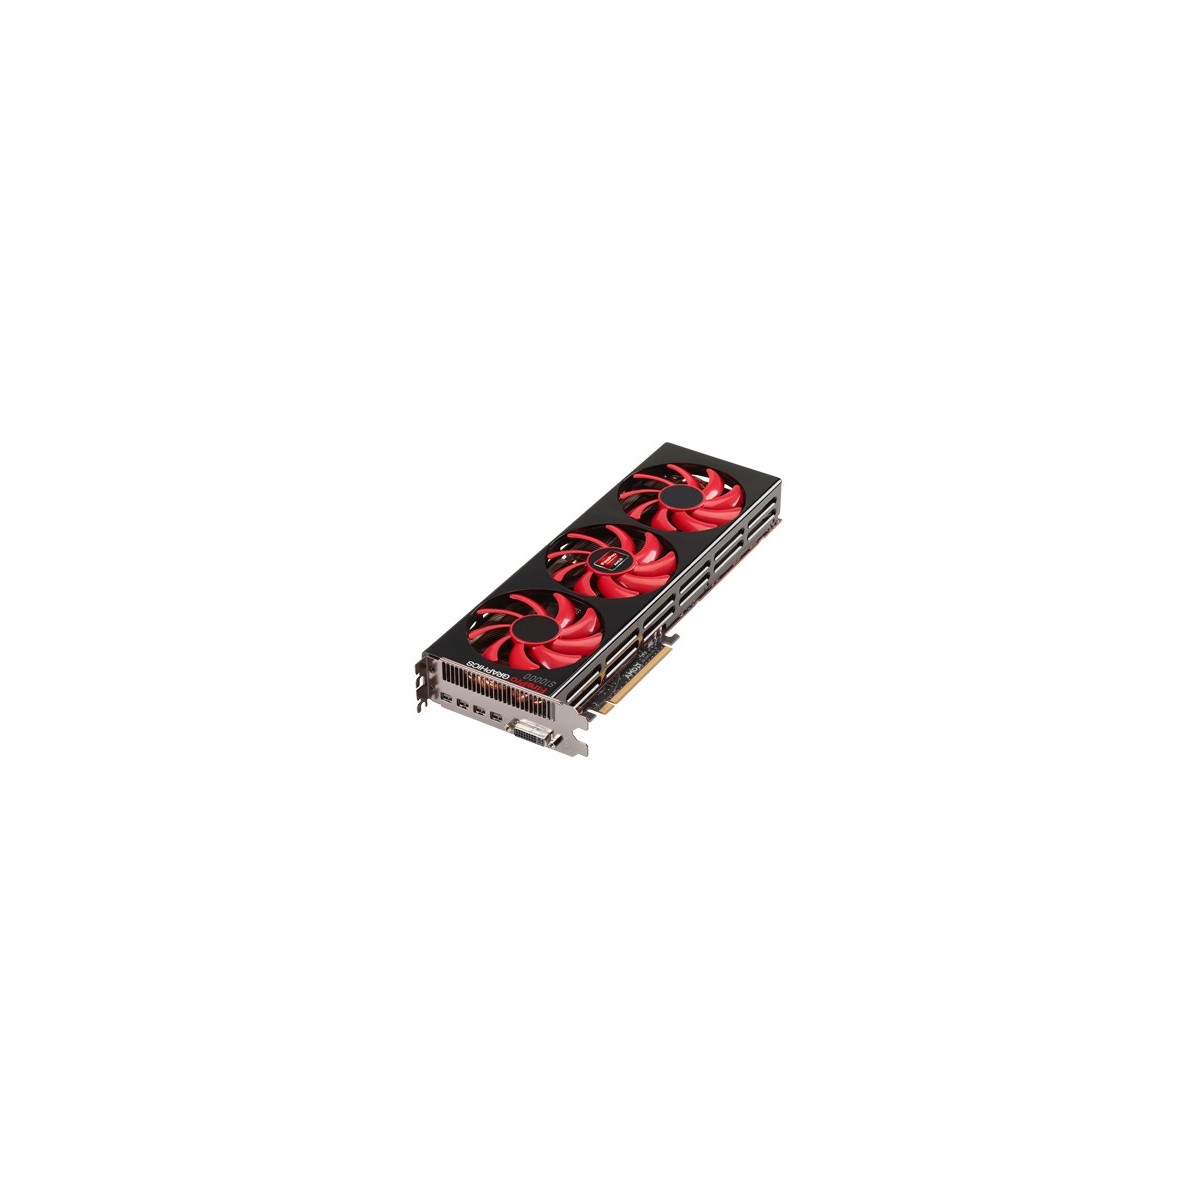 AMD 100-505779 - FirePro S10000 - 6 GB - GDDR5 - 384 bit - 4096 x 2160 pixels - PCI Express 3.0